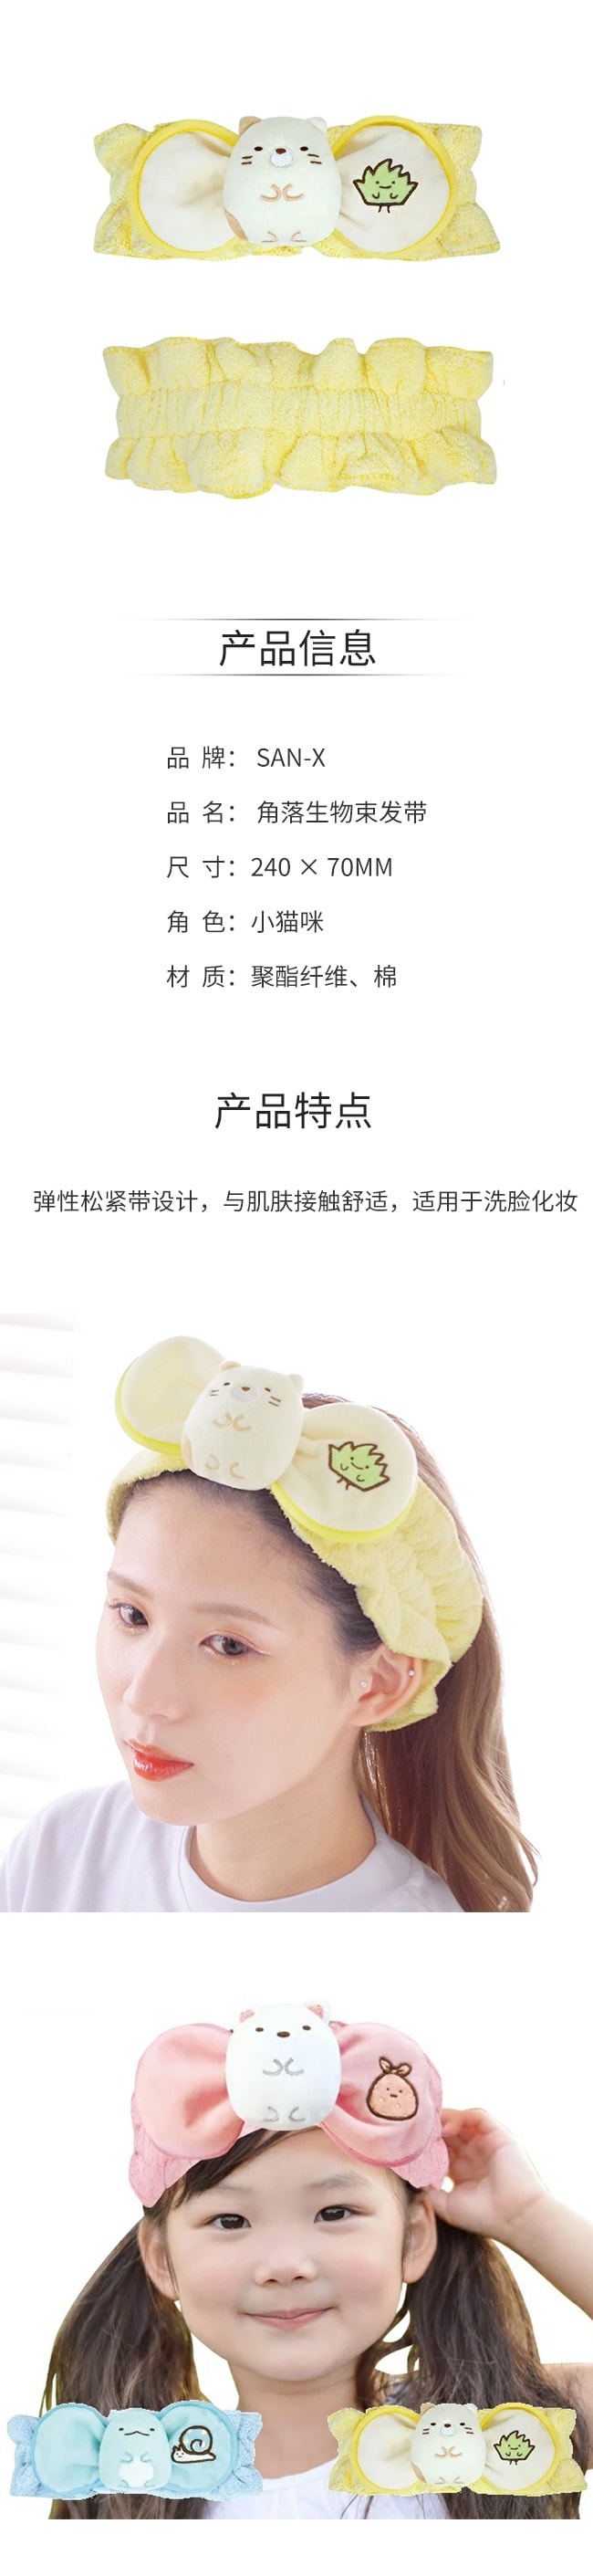 【日本直邮】SAN-X角落生物 敷面膜发箍洗脸专用可爱束发带 【小猫咪】